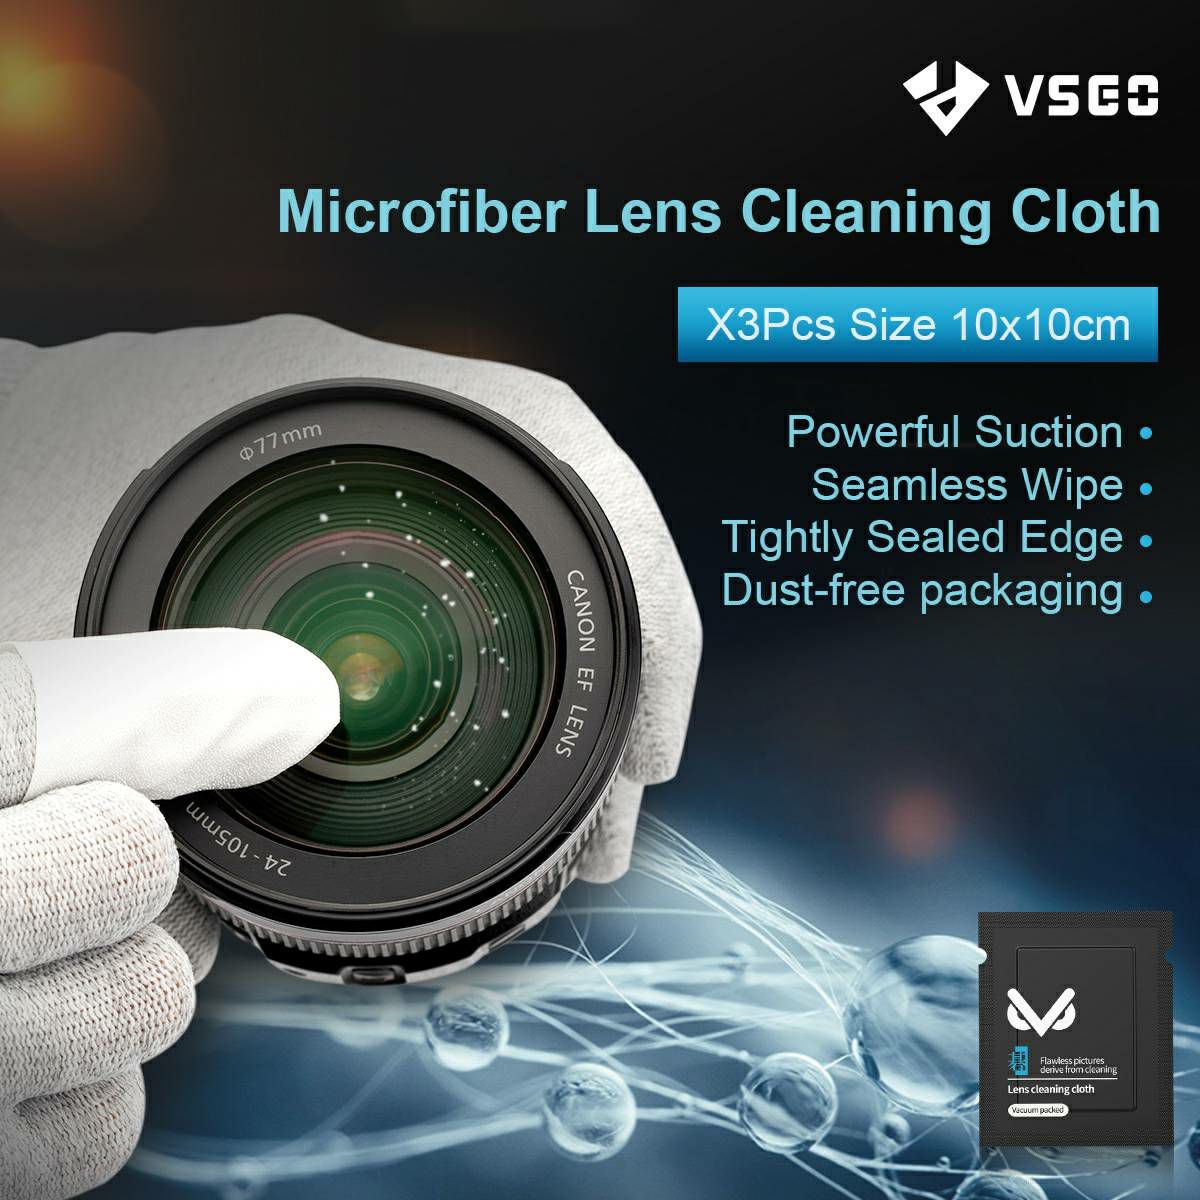 VSGO VS-A1E Portable Lens Cleaning Kit set za čišćenje fotoaparata i objektiva (1x air blower + 3x mikrofibra + 2x maramice + 1x 2ml tekućina + 1x futrola)